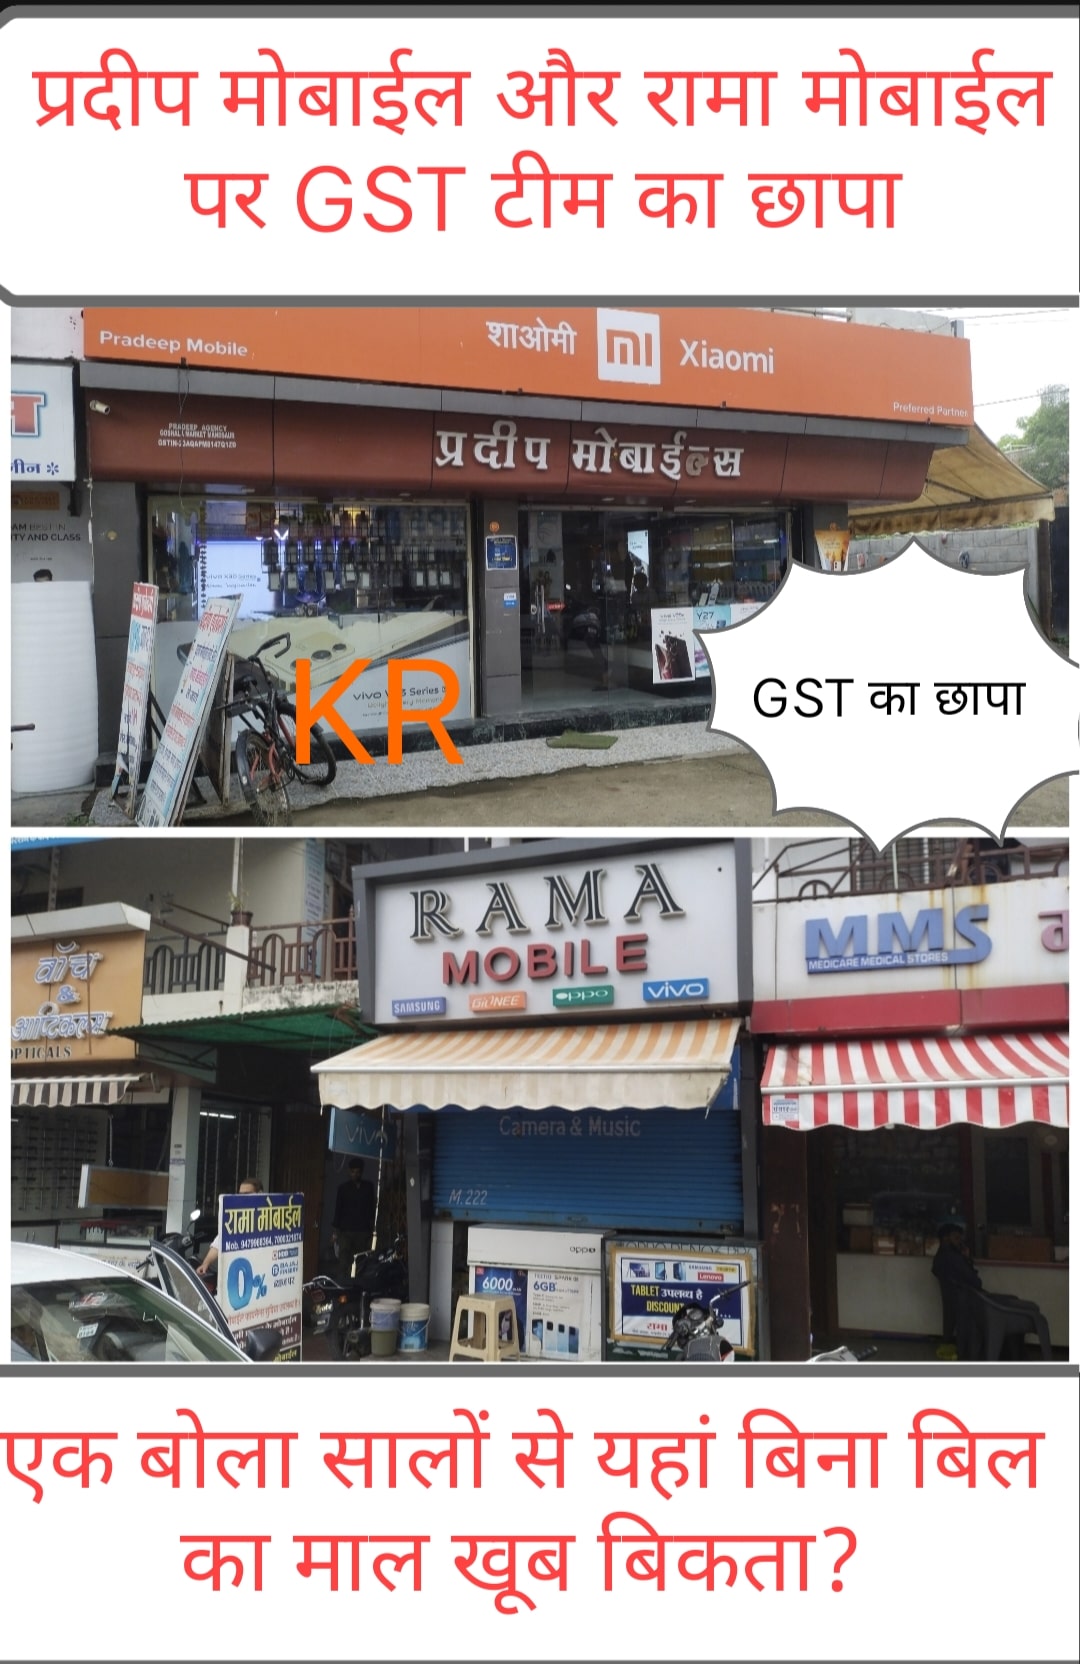 #दया मंदिर के पास प्रदीप मोबाईल और गांधी चौराहा स्थित रामा मोबाईल सहित कुछ और पर भी GST टीम की छापामार कार्यवाही खबर...!